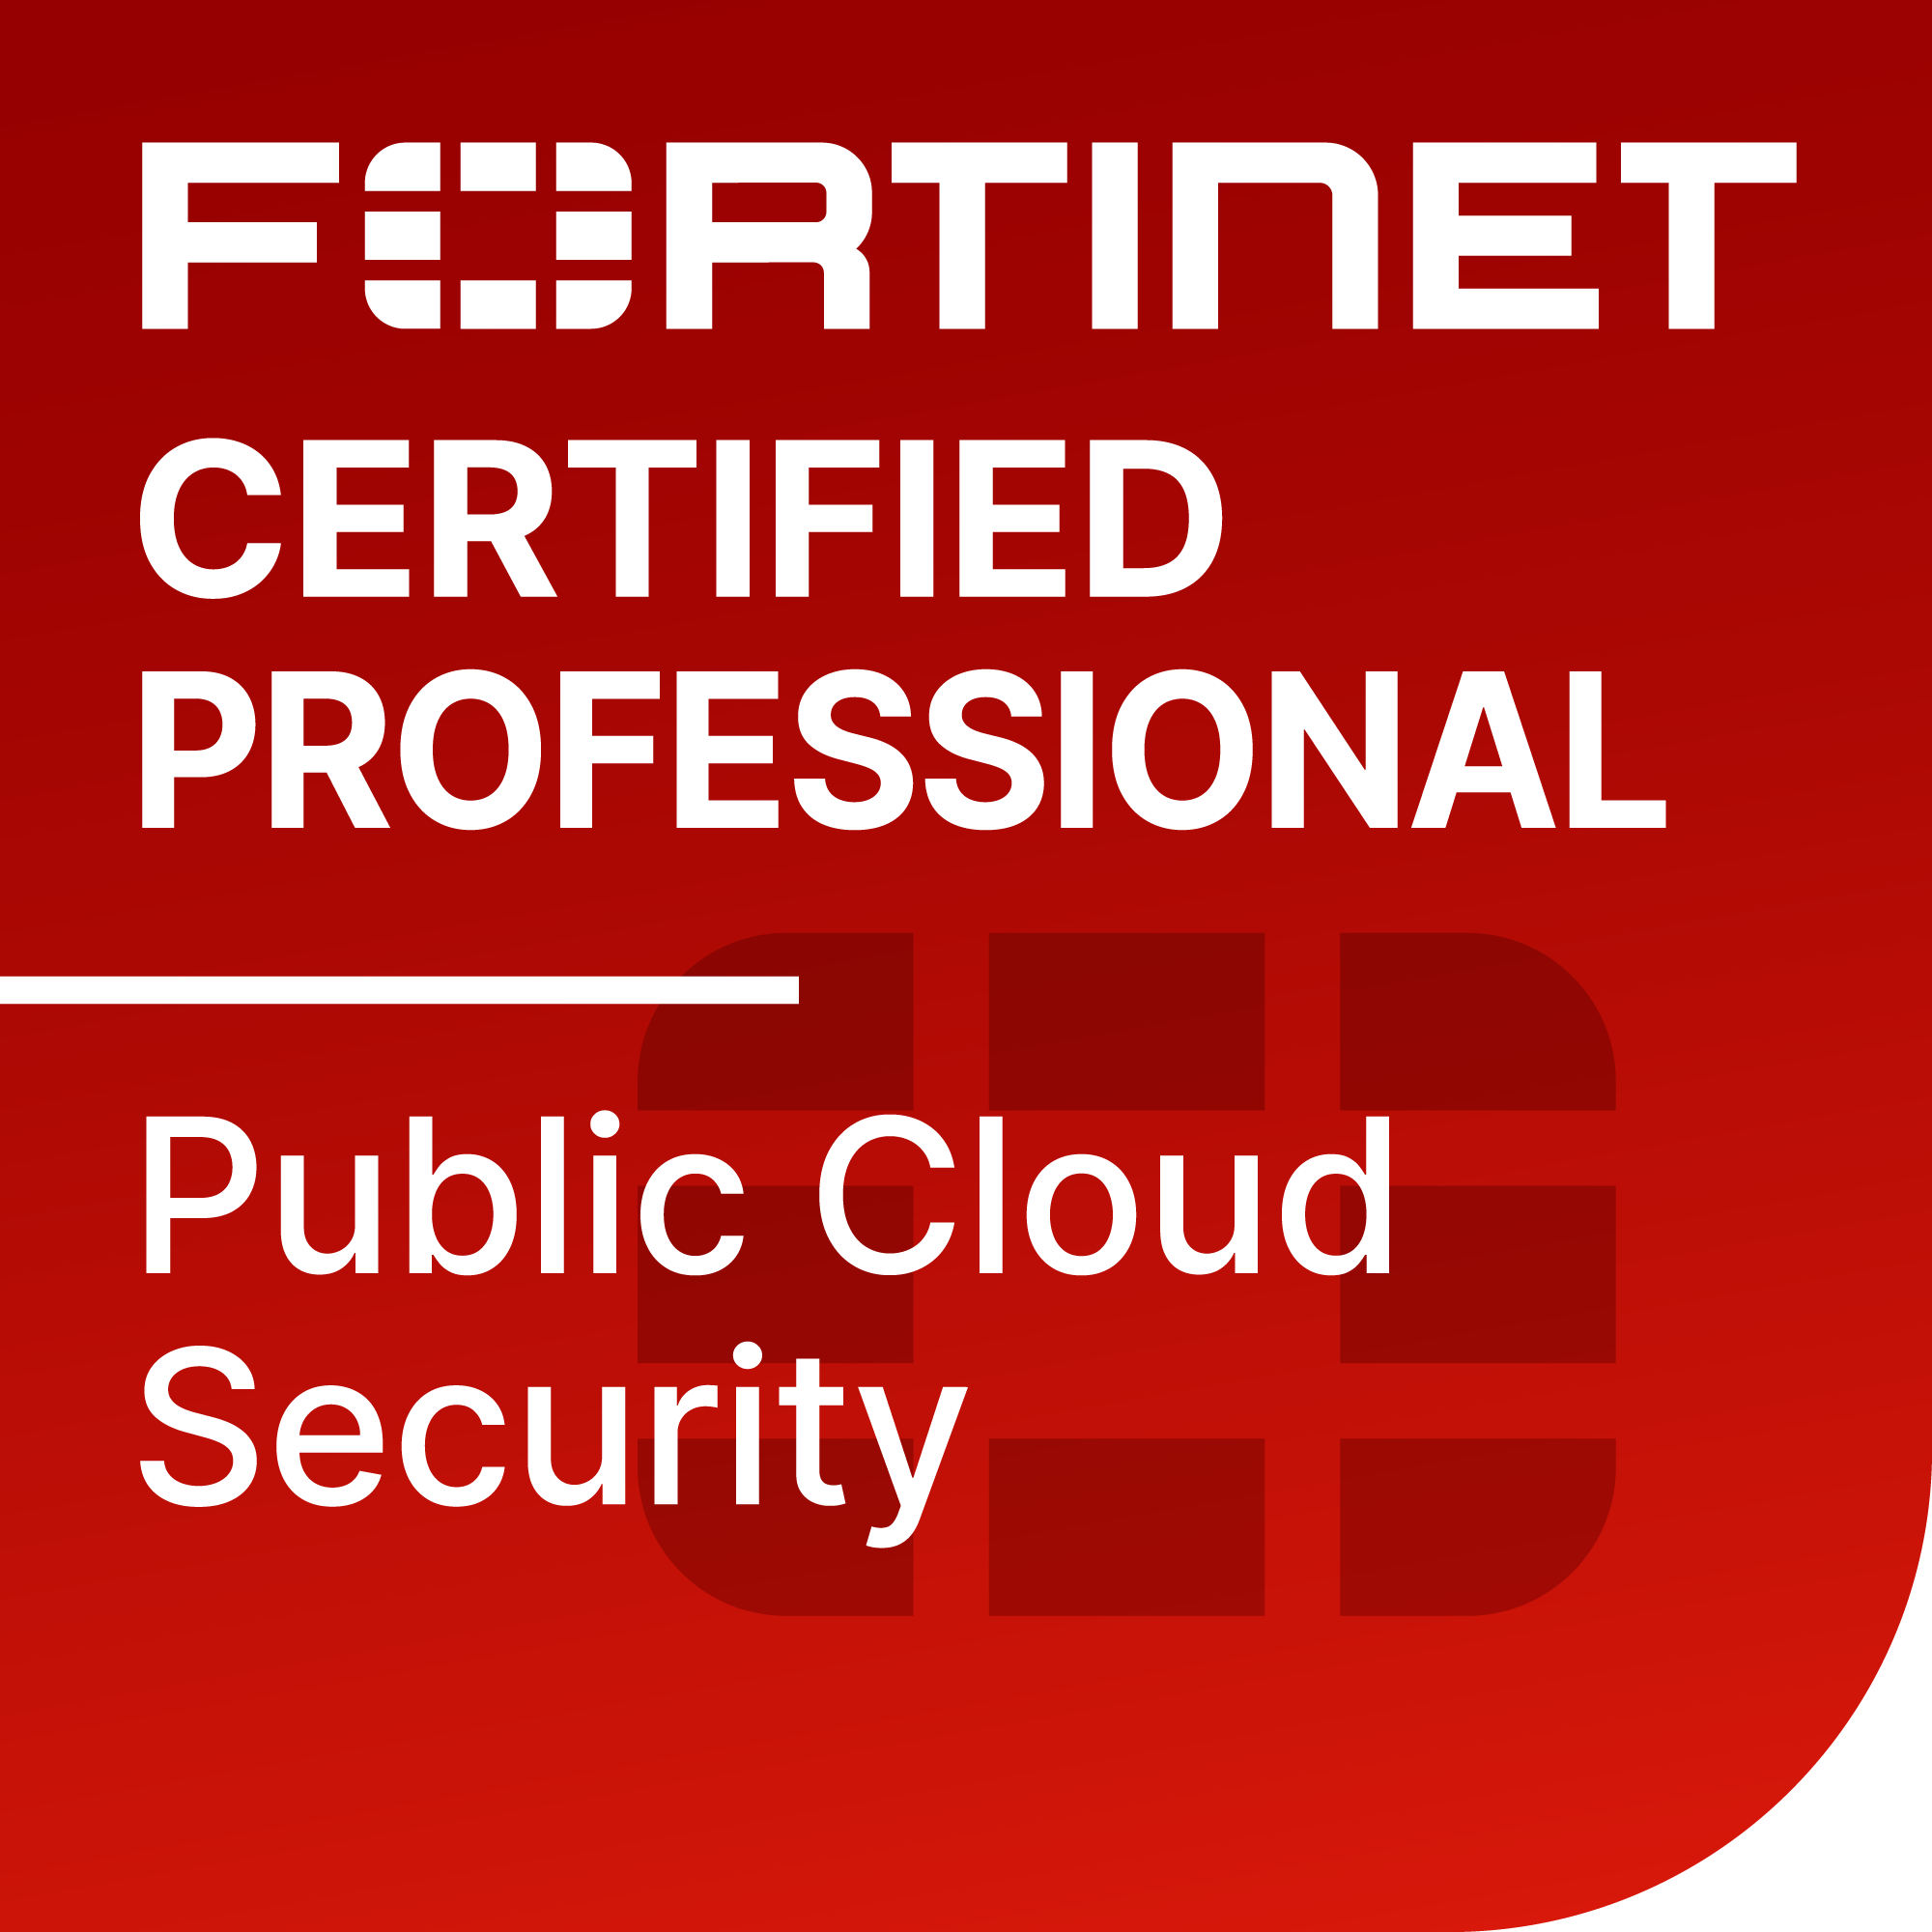 Profesional certificado de Fortinet, Seguridad en la nube pública